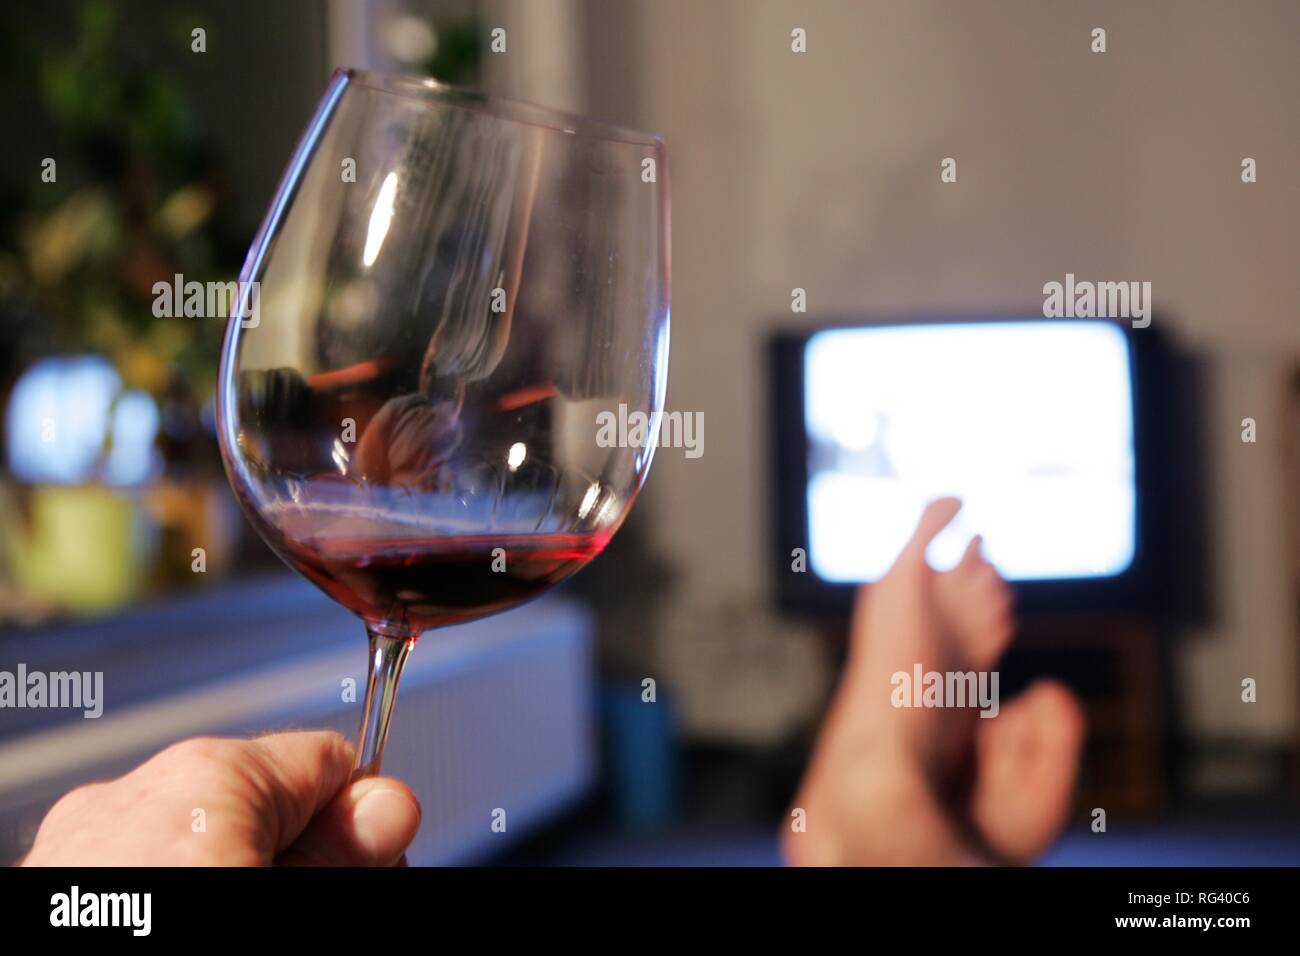 DEU, Allemagne : l'homme en face d'une télévision. Verre de vin rouge. Banque D'Images